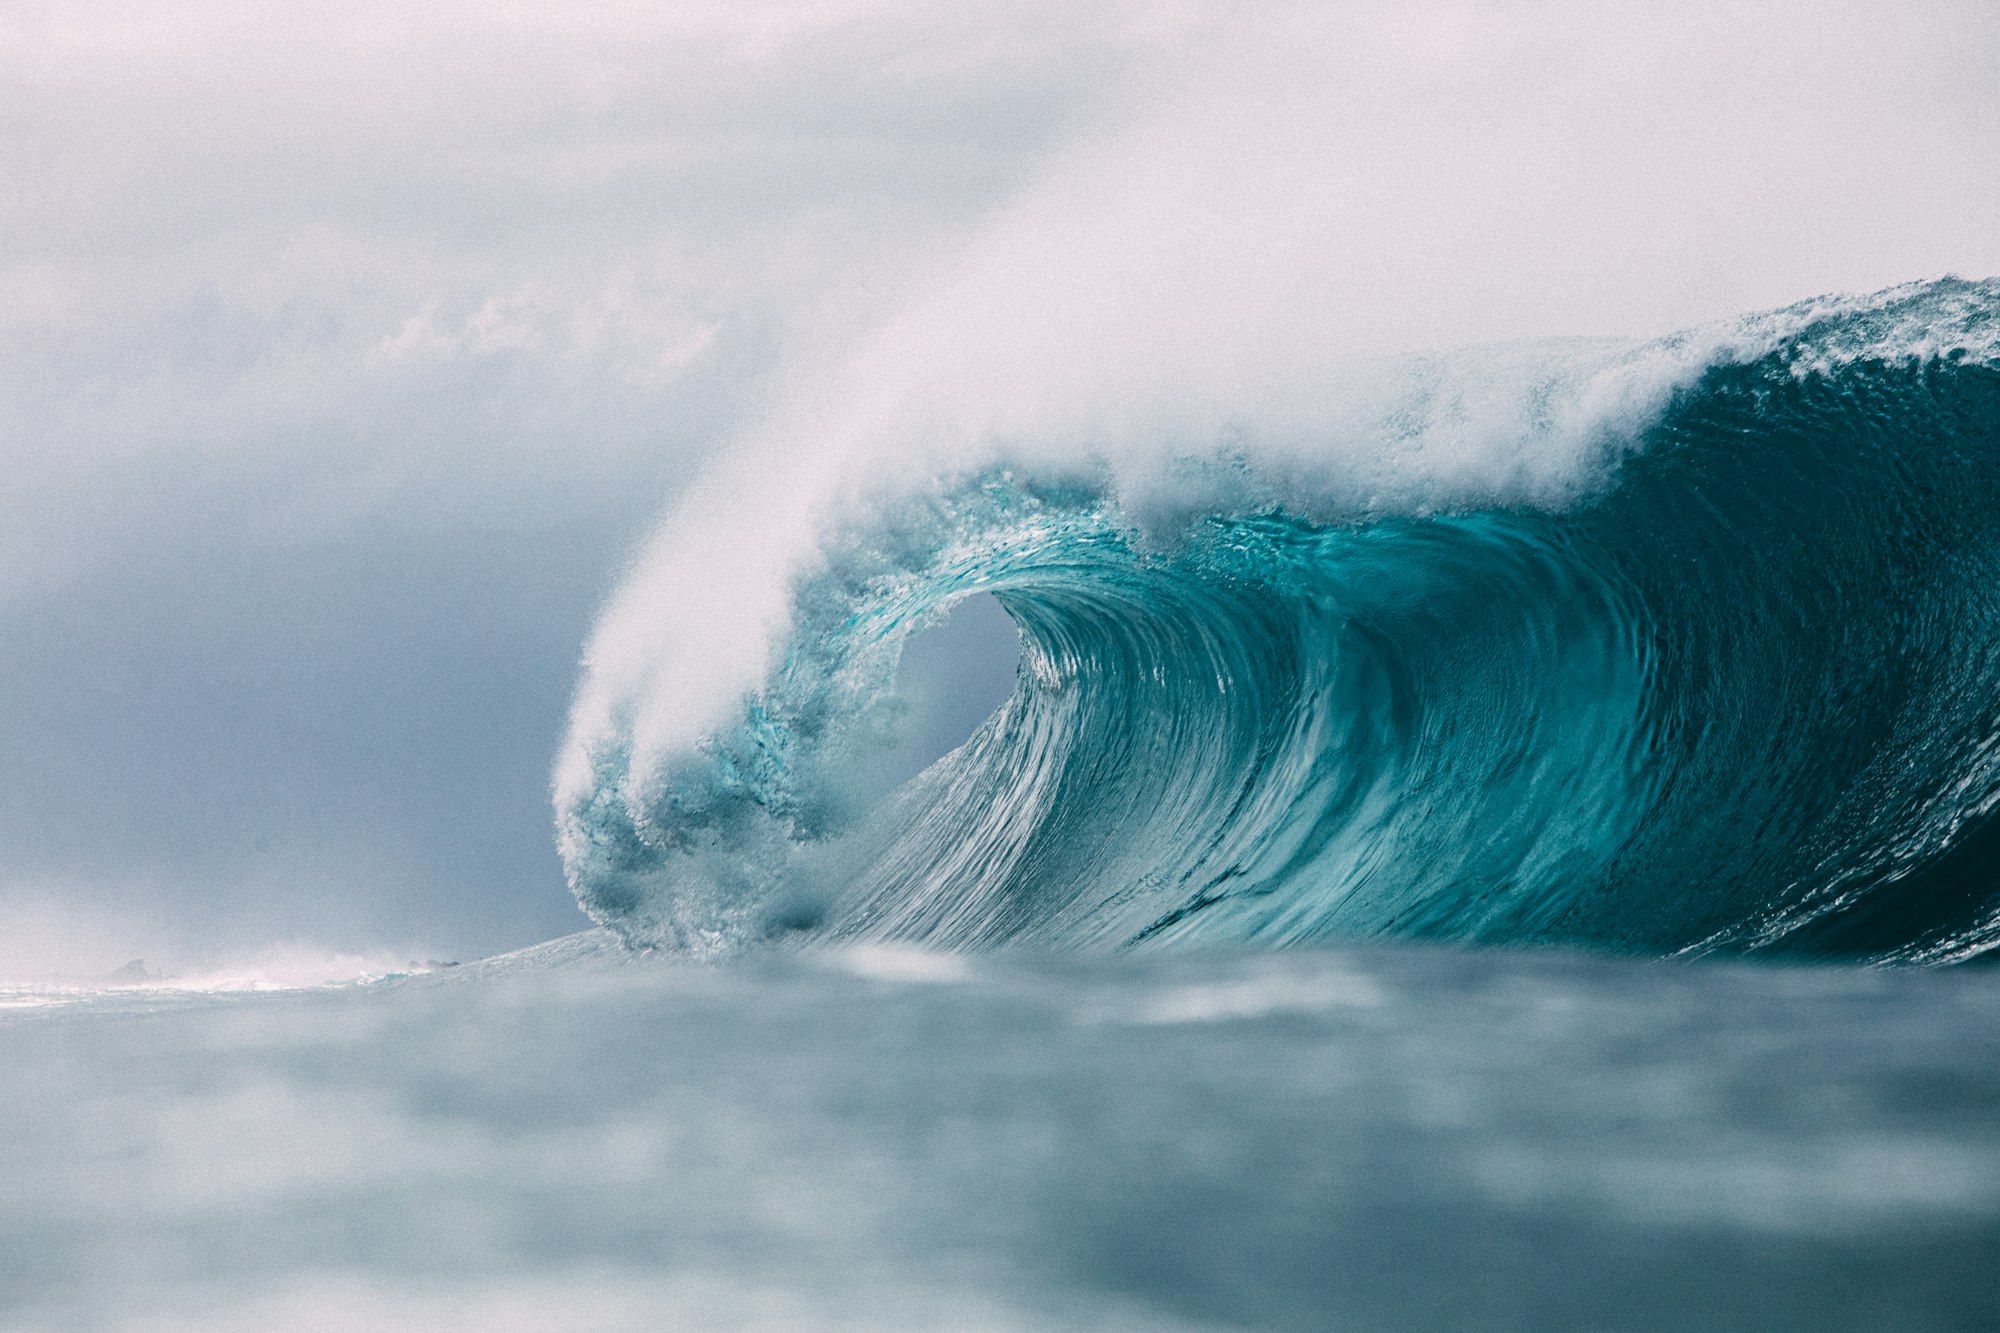 A Truth Tsunami wave crashes onto our shores